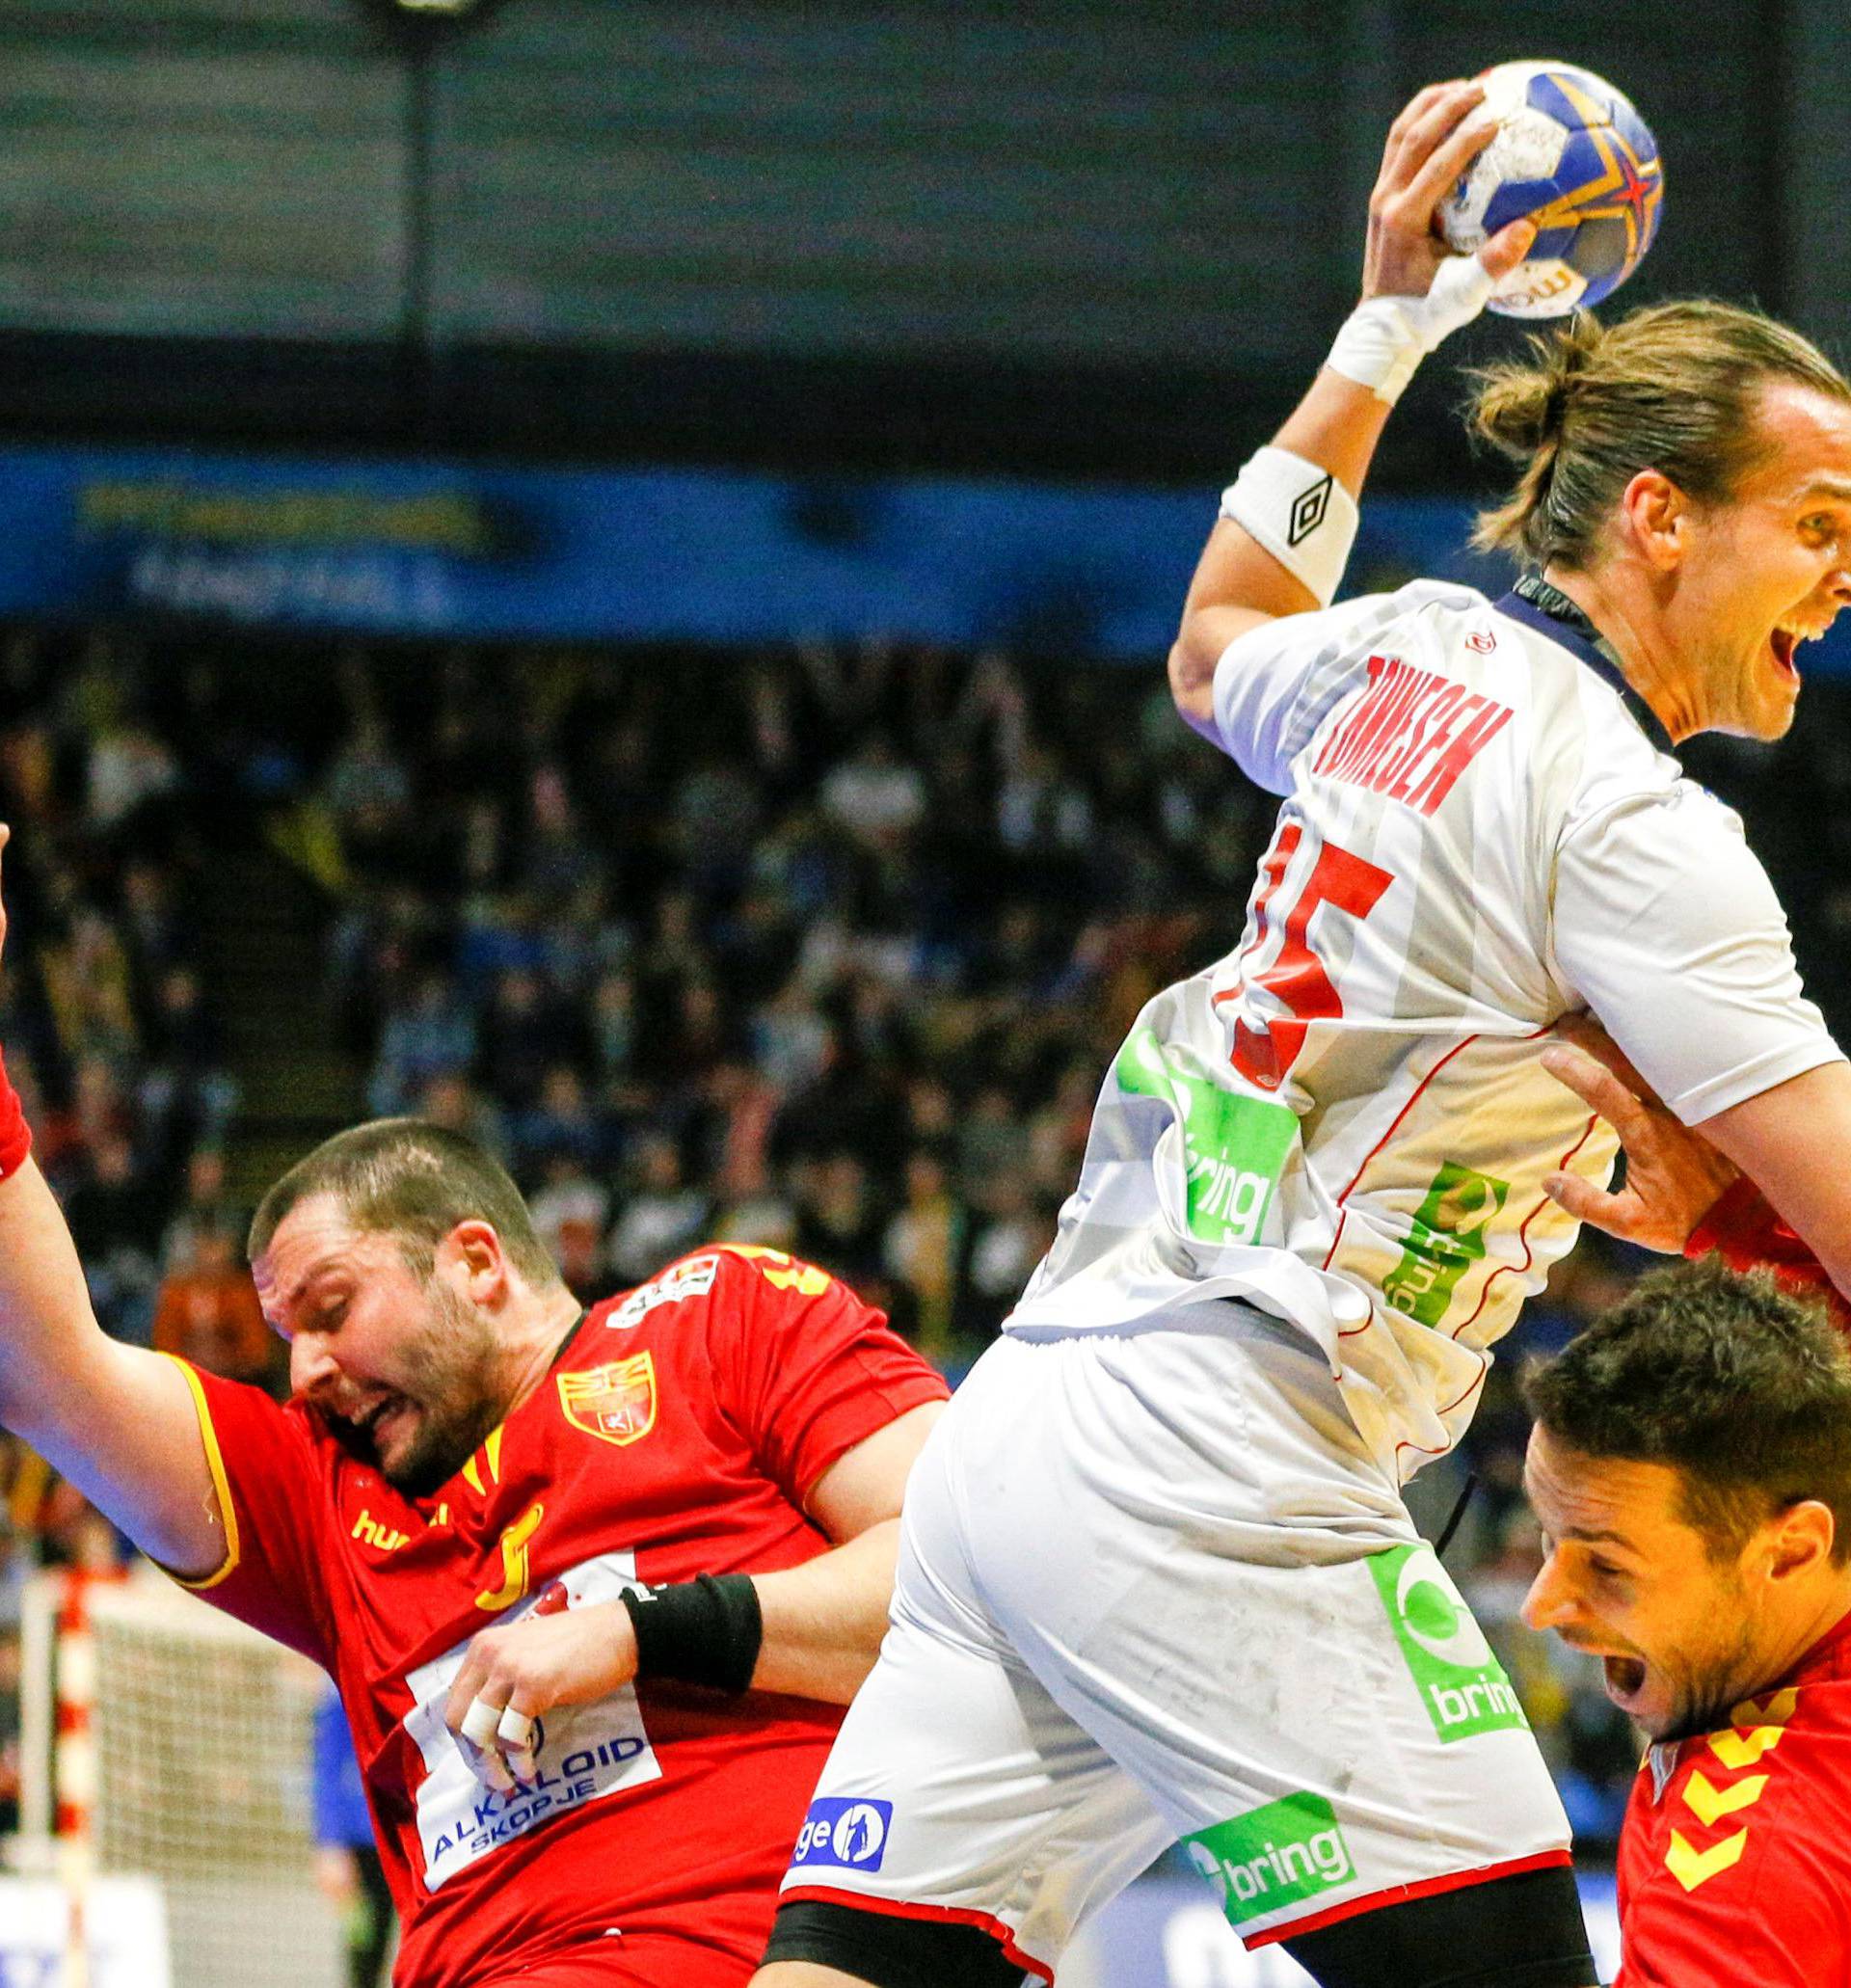 Menâs Handball - Macedonia v Norway - 2017 Men's World Championship Second Round, Eighth Finals